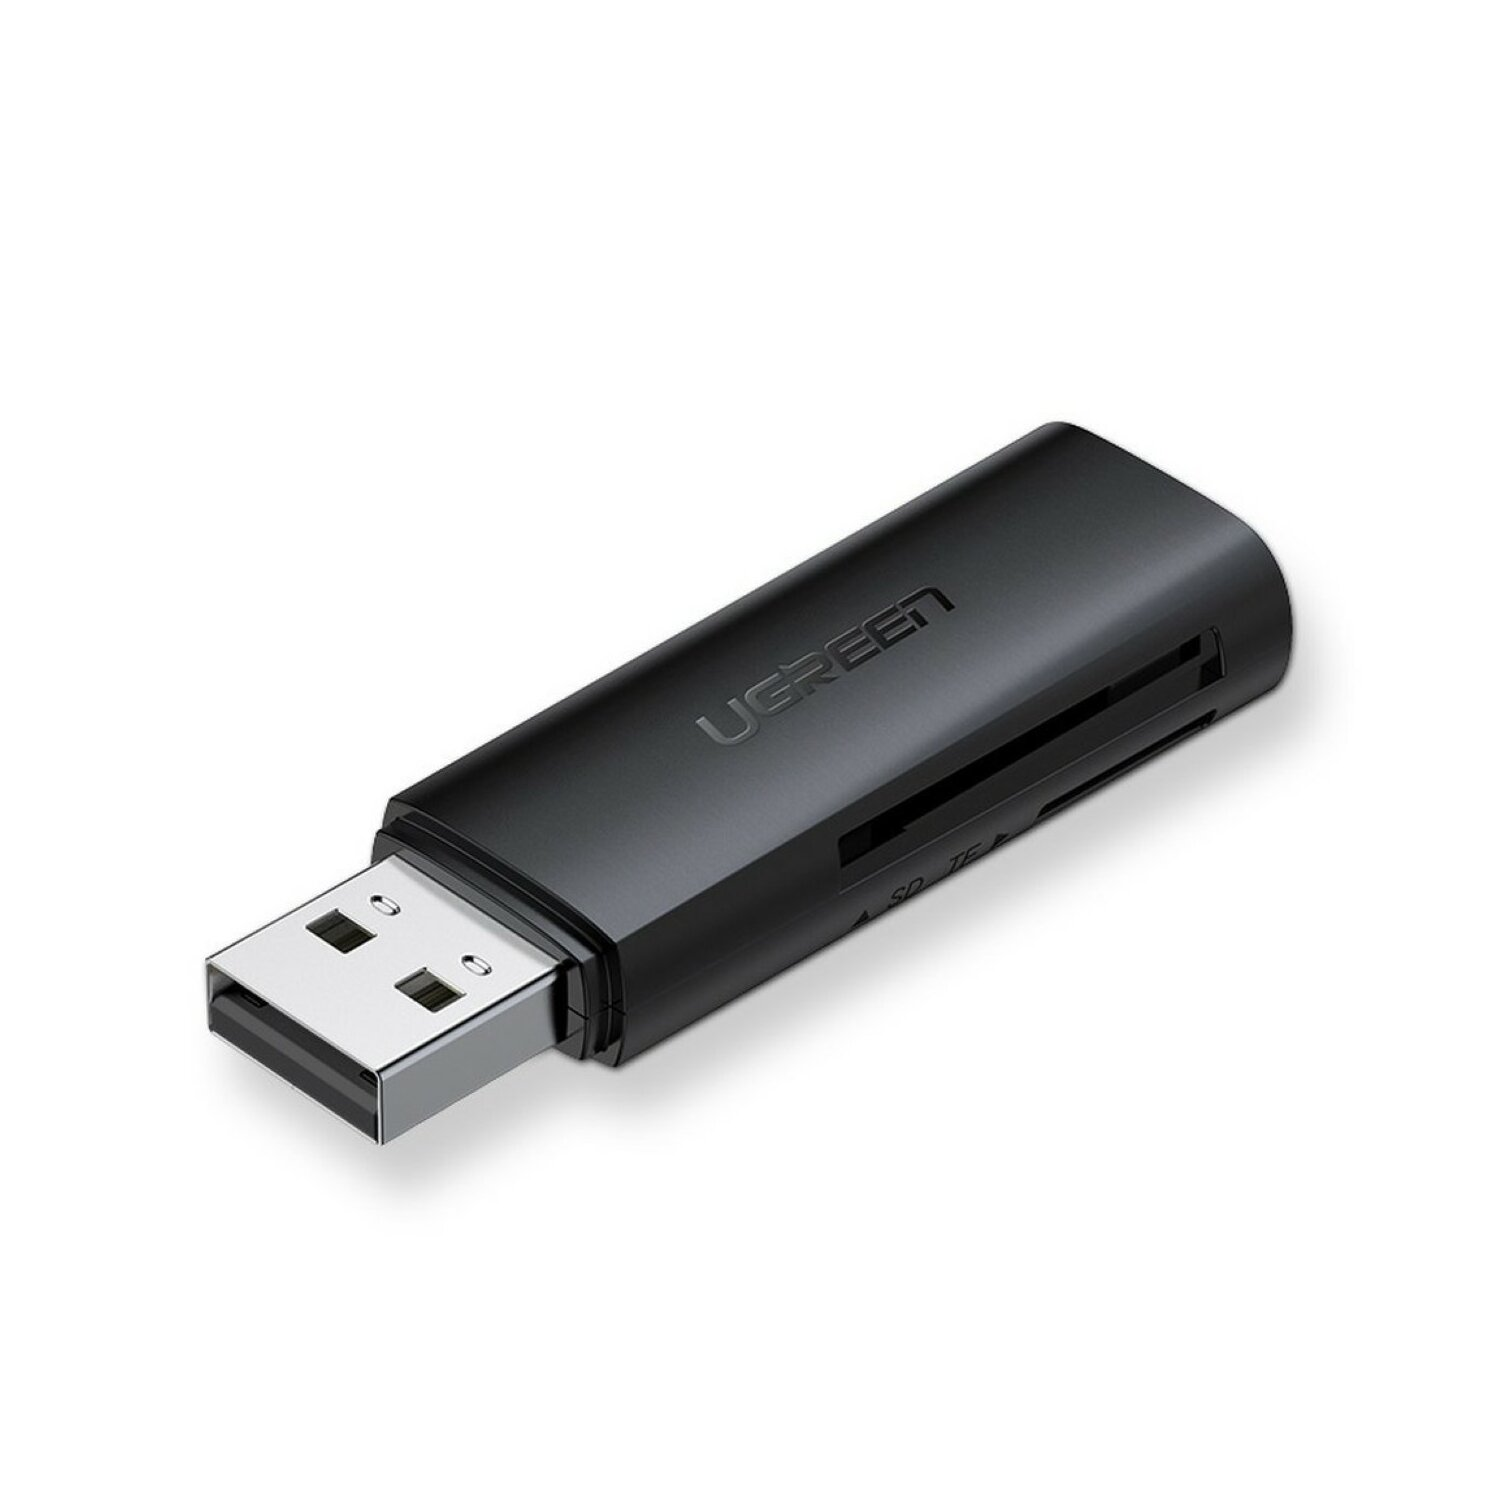 UGREEN CM264 512 Kartenleser 3.0 GB USB